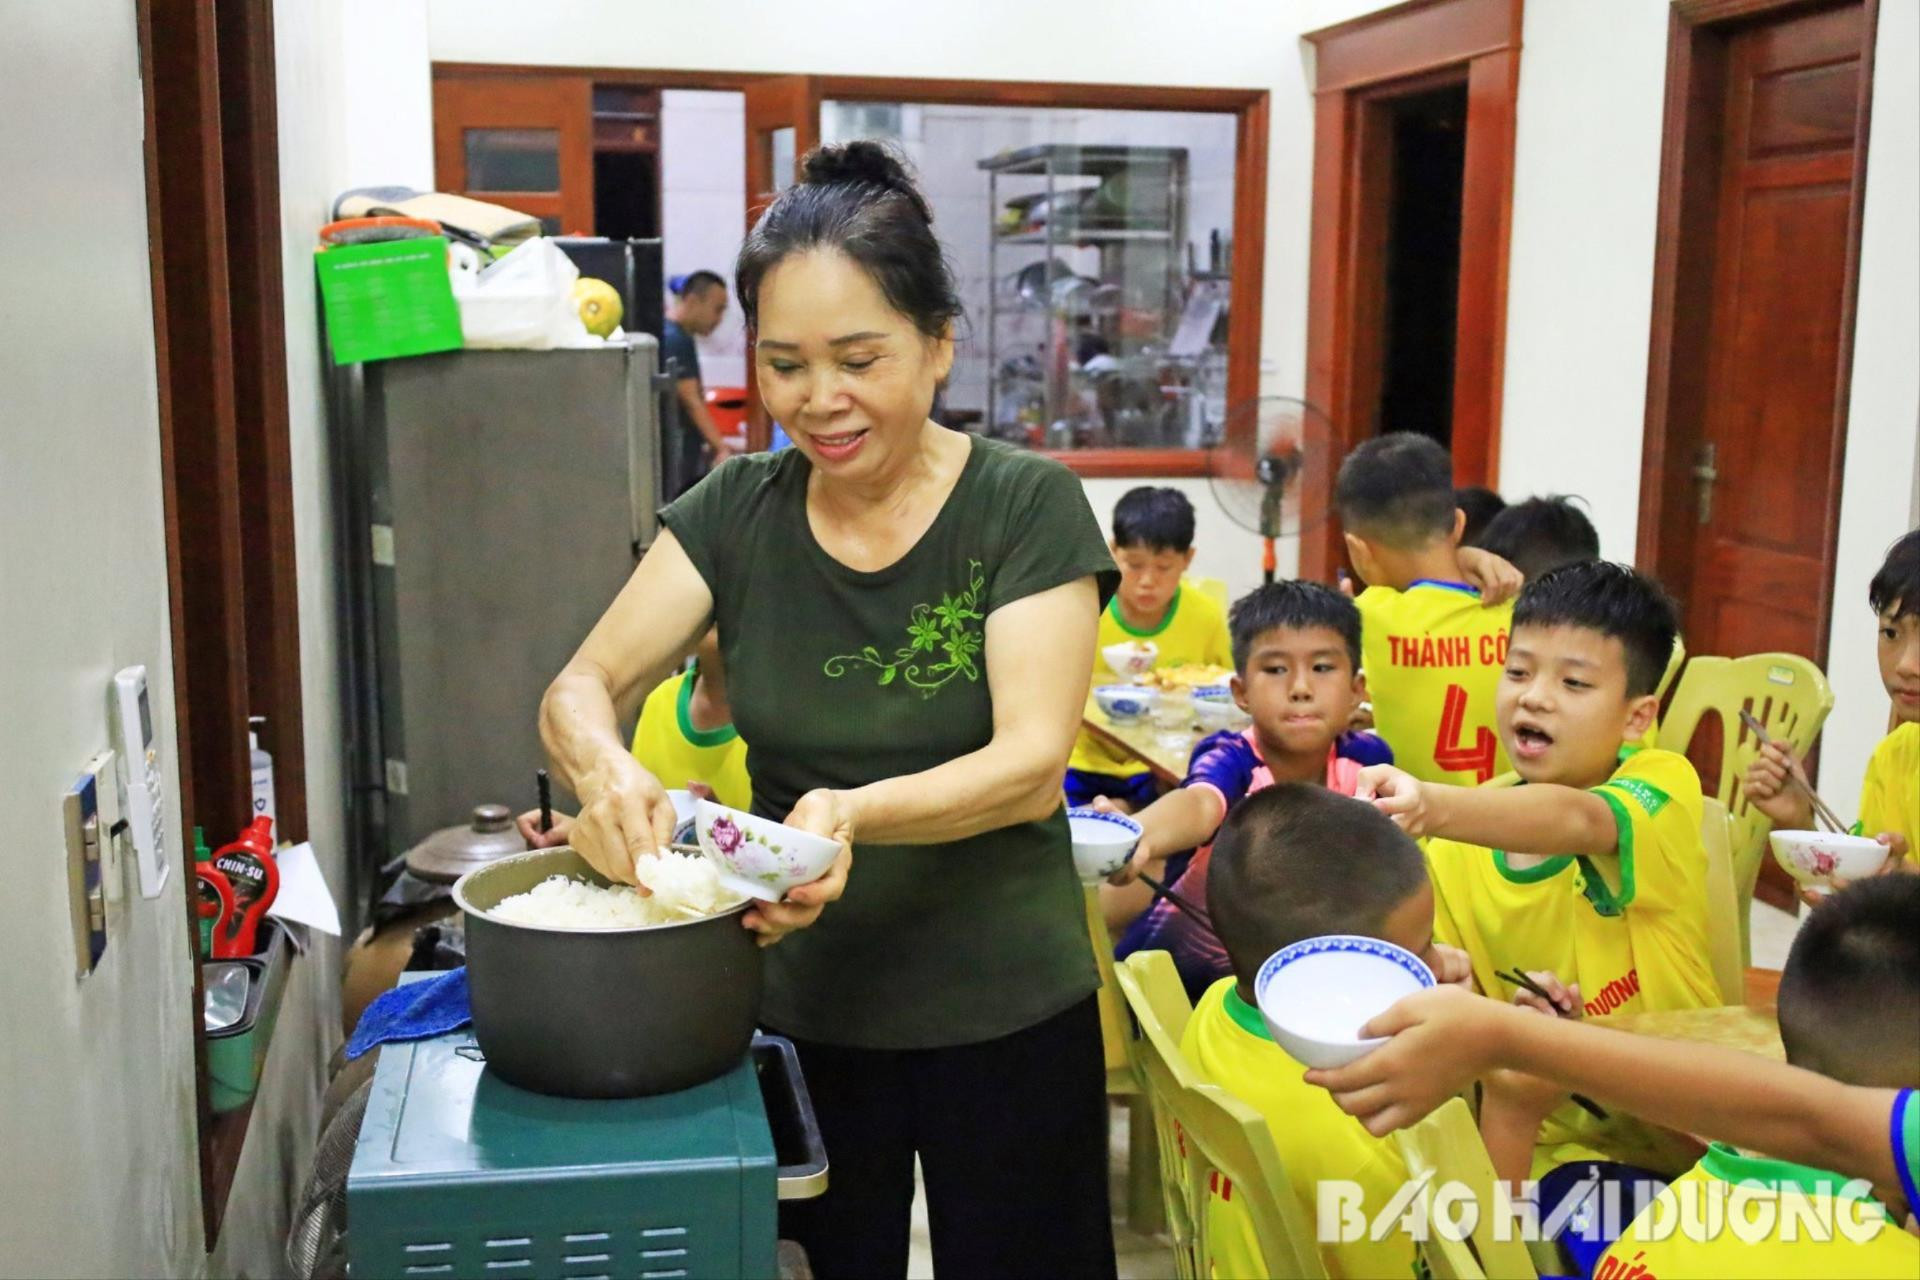 Toàn bộ thực phẩm được bà Hồng đi chợ chọn mua và tự nấu nướng phục vụ 20 cầu thủ